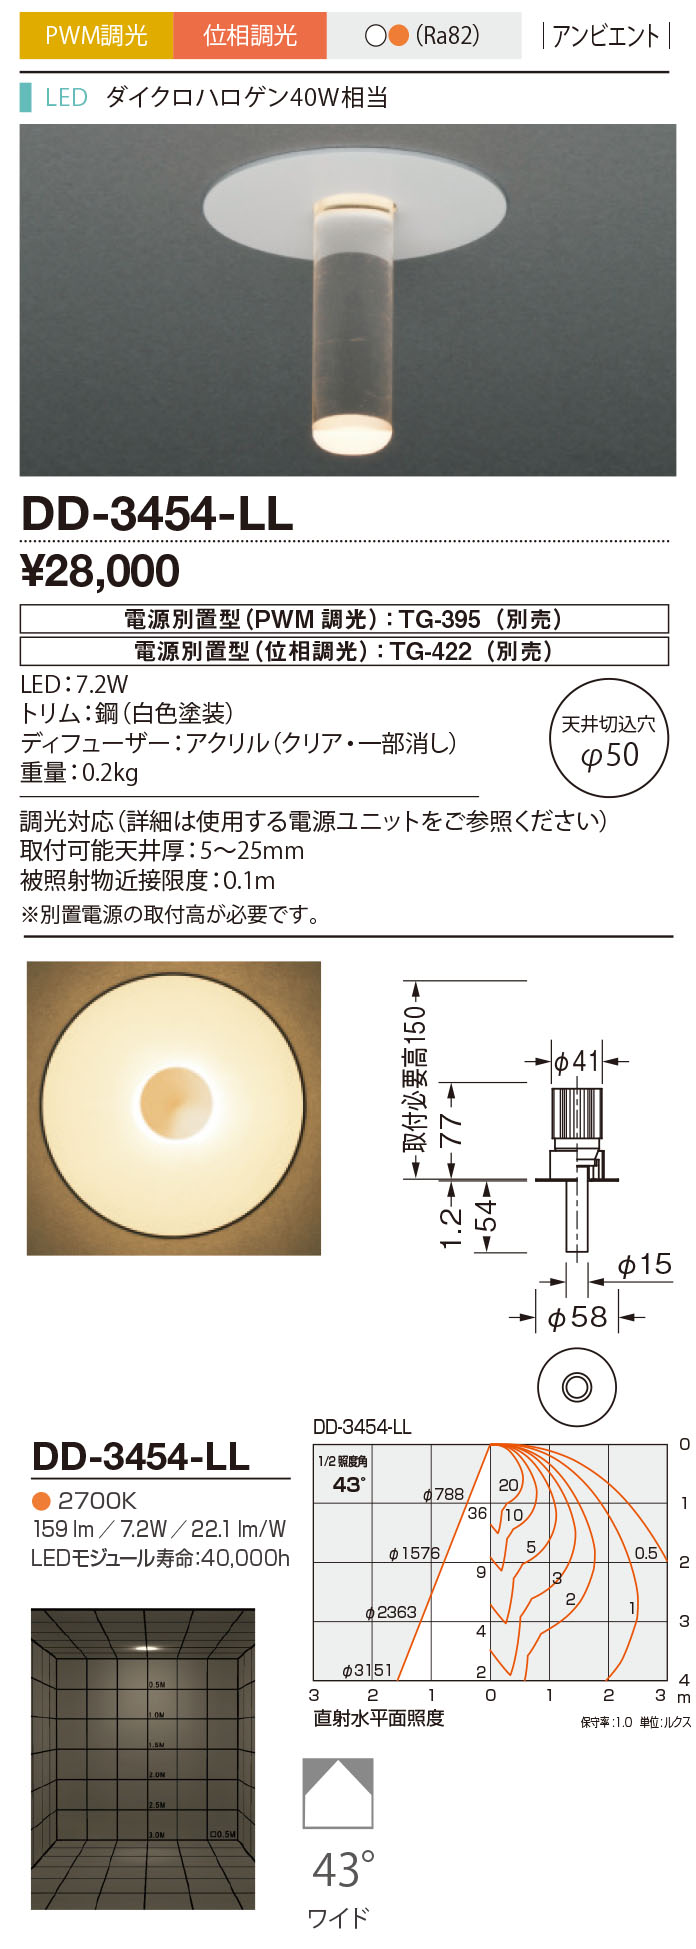 山田照明/YAMADA 【DD-3454-LL】ダウンライト アンビエント LED一体型